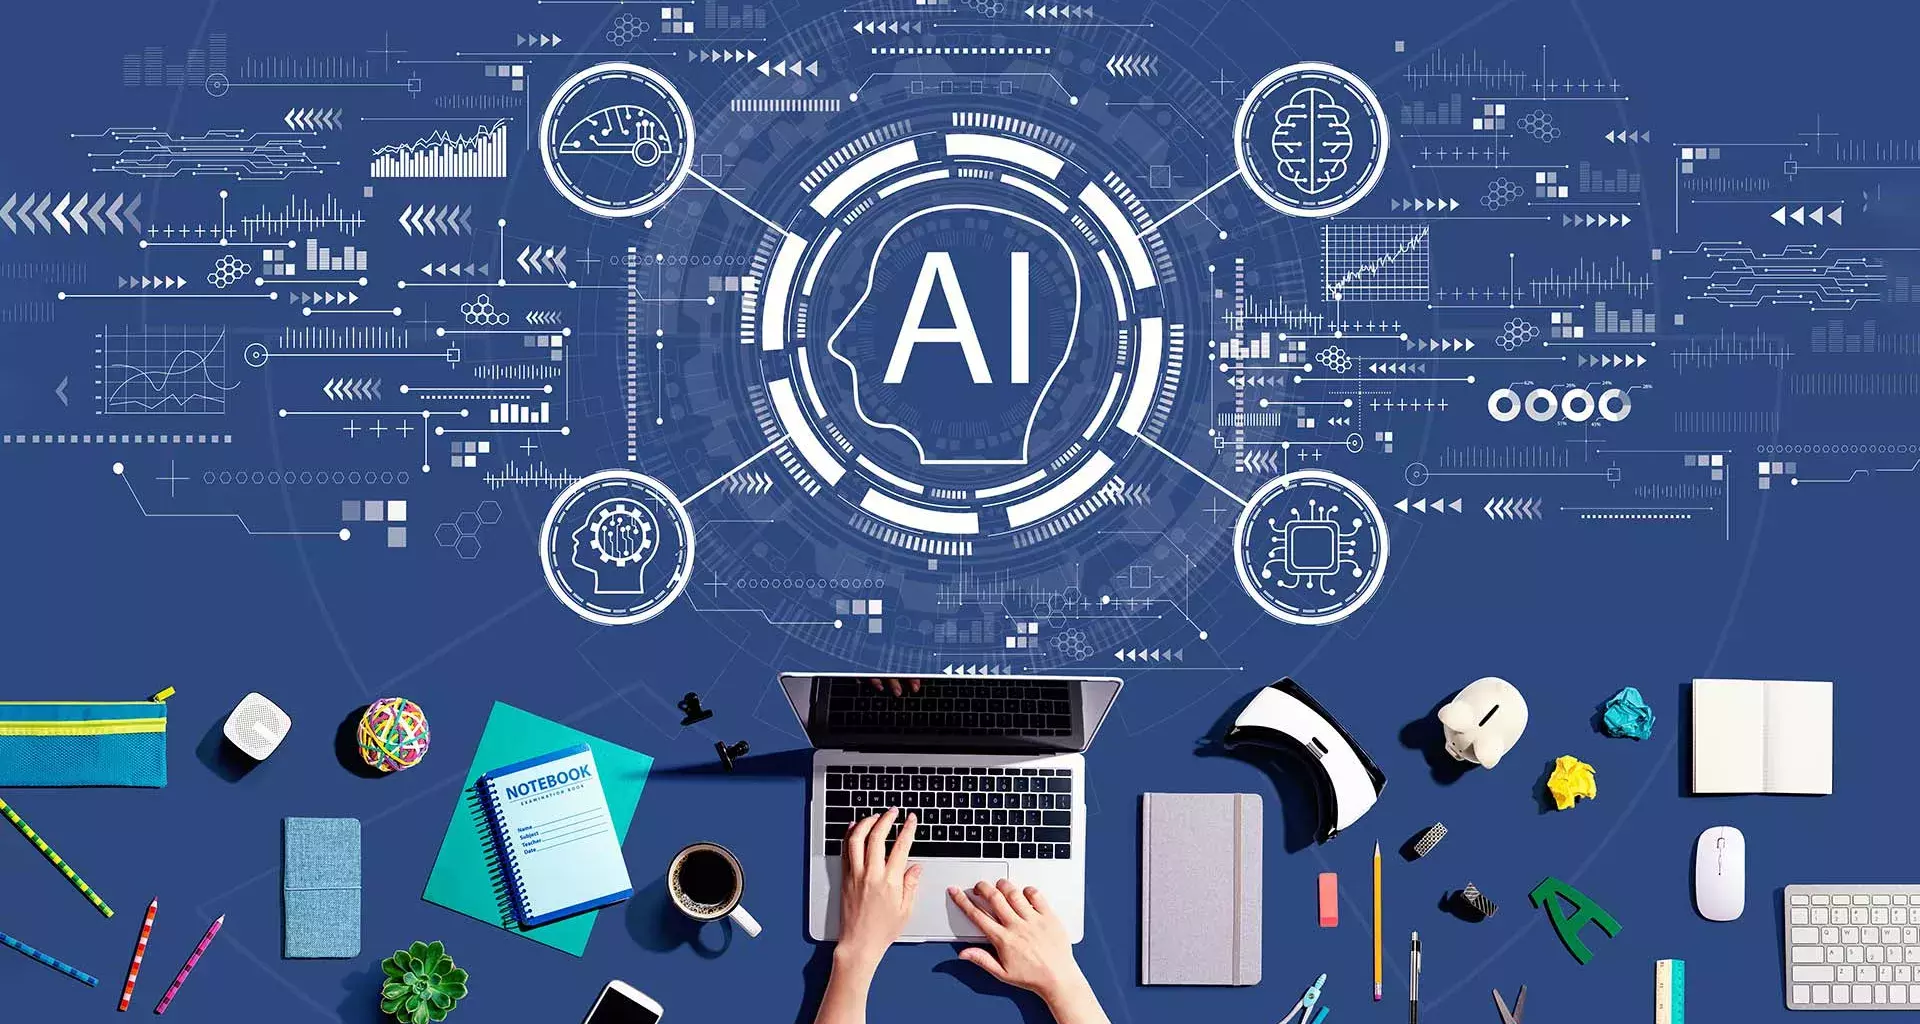 Iconos de tecnología alrededor de las letras AI, representando la inteligencia artificial